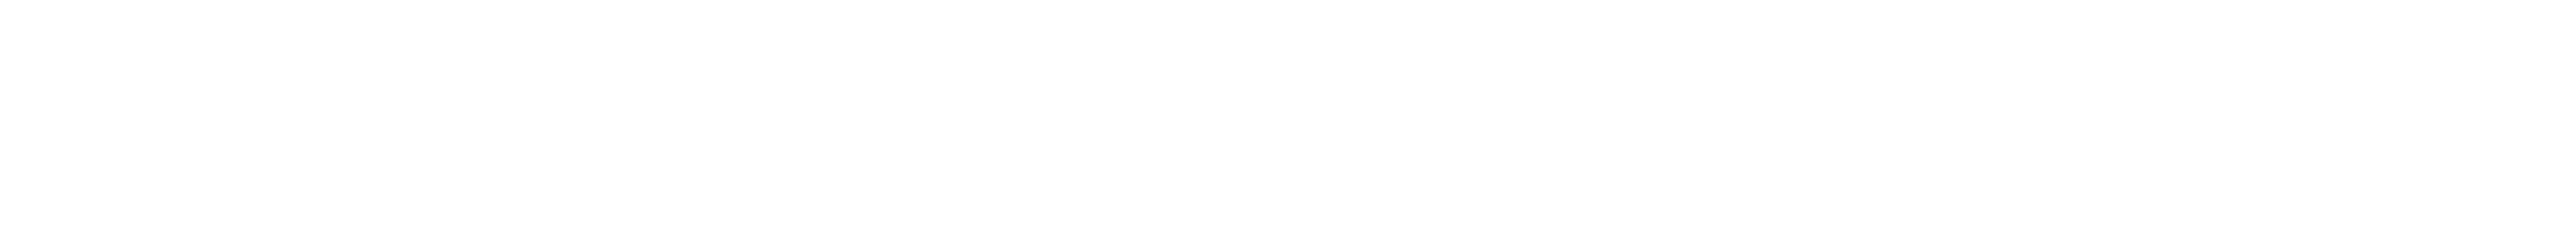 yuntan-logo